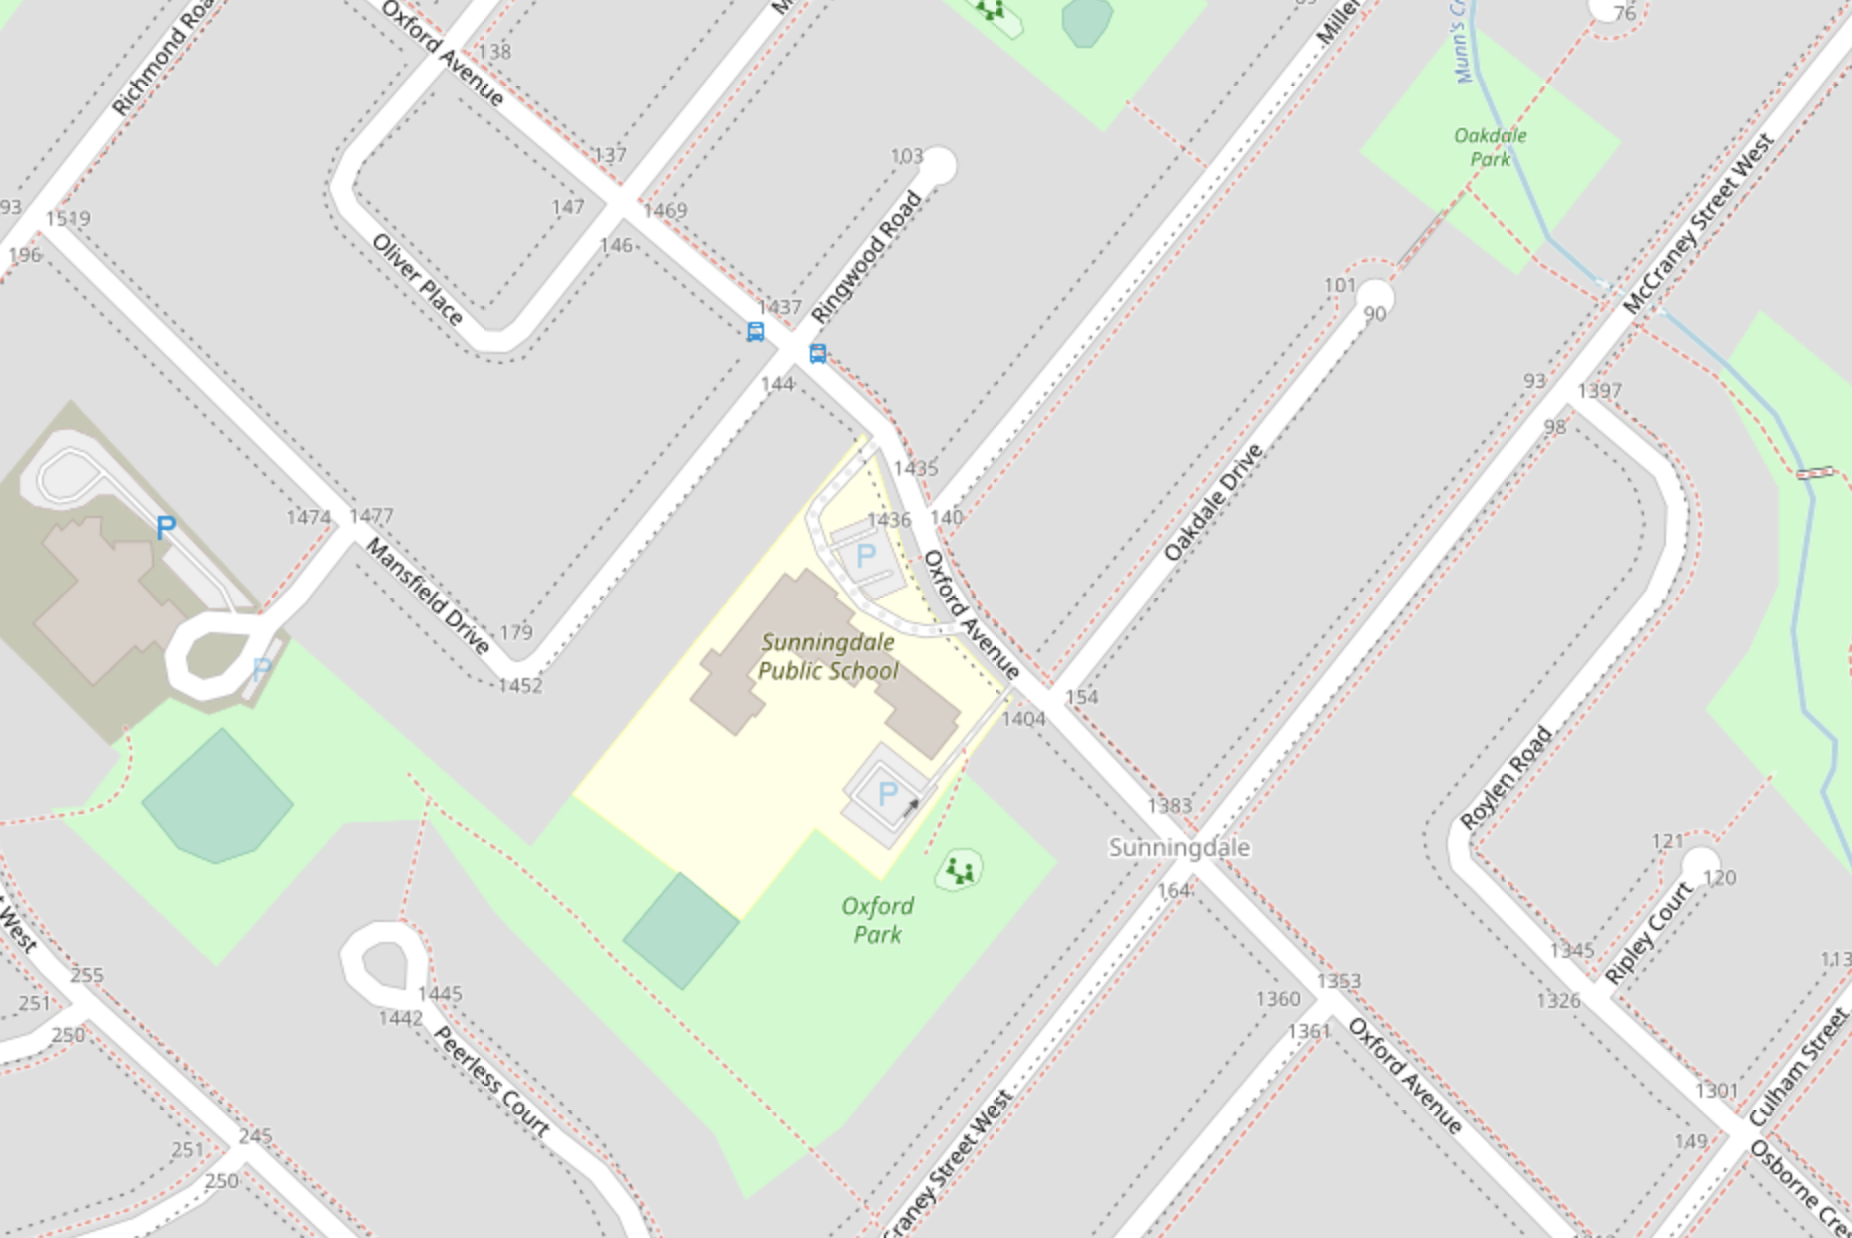 Sunningdale Public School | Openstreetmap